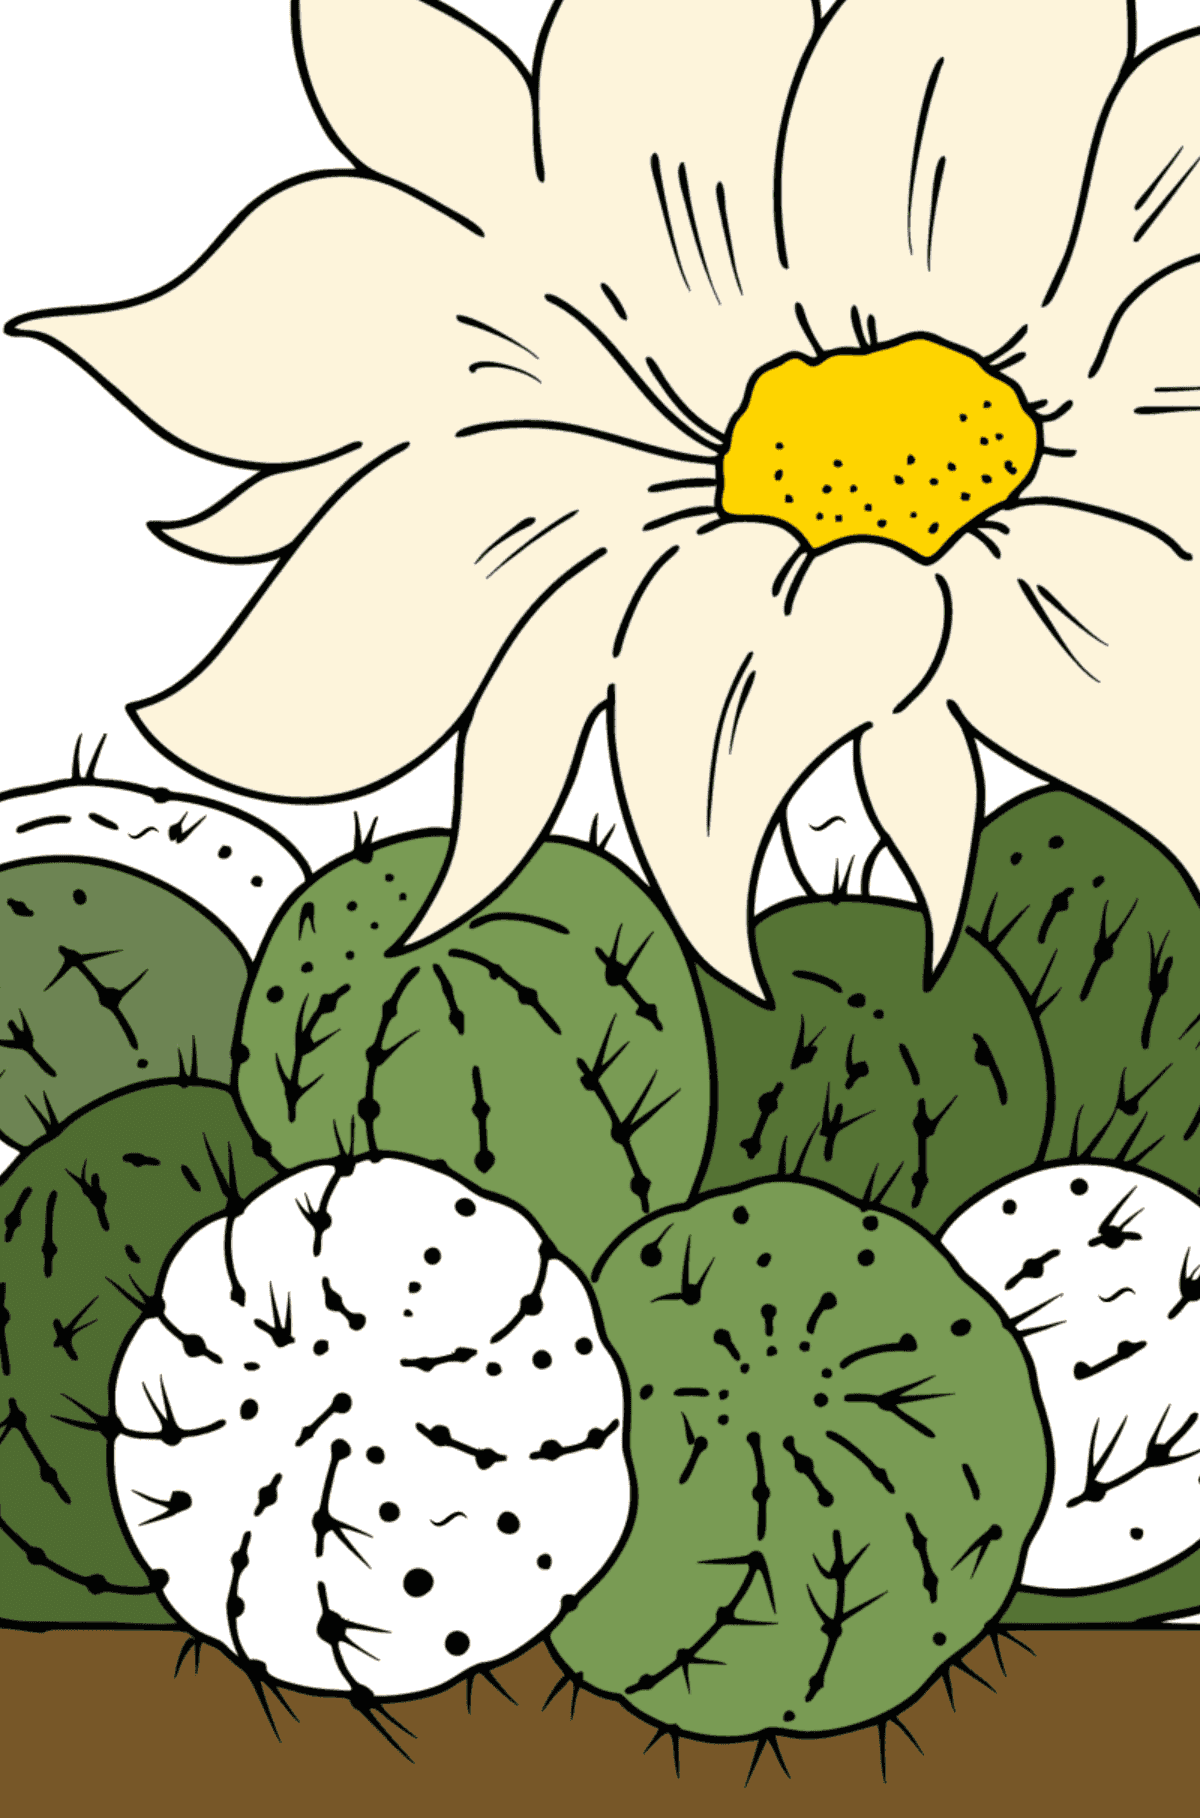 Linda Desenho para colorir de Cactus - Colorir por Símbolos para Crianças